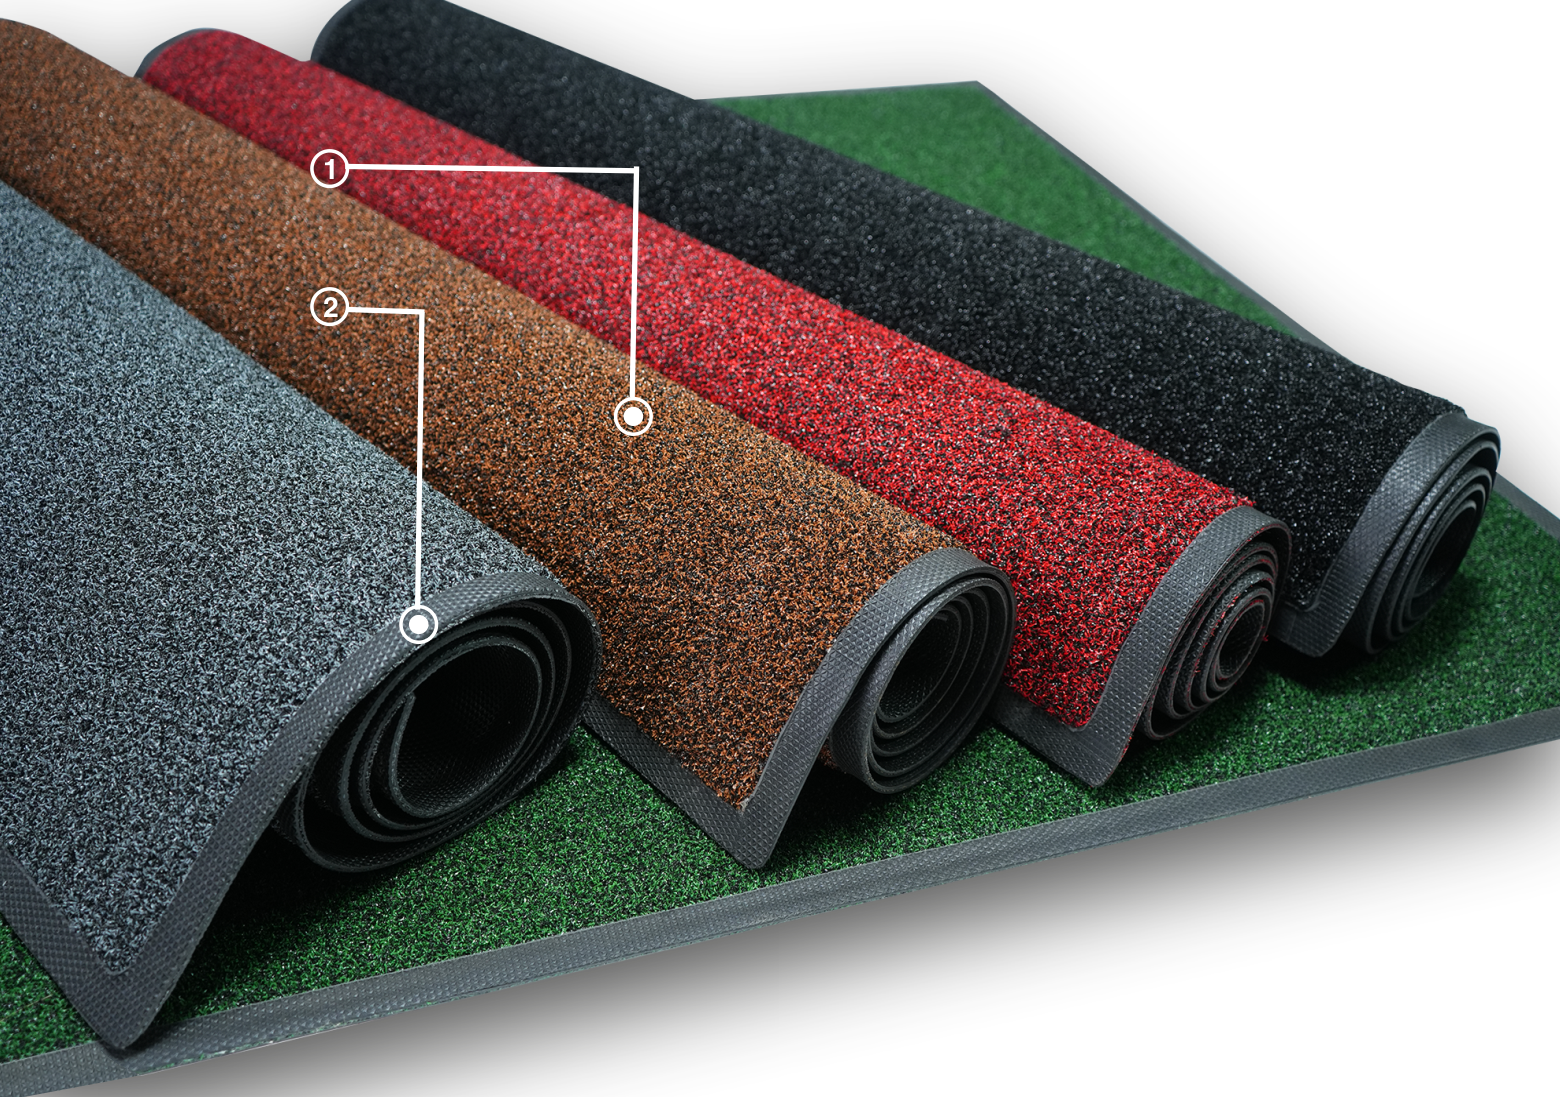 UltiScrape scraper mat features assorted colors